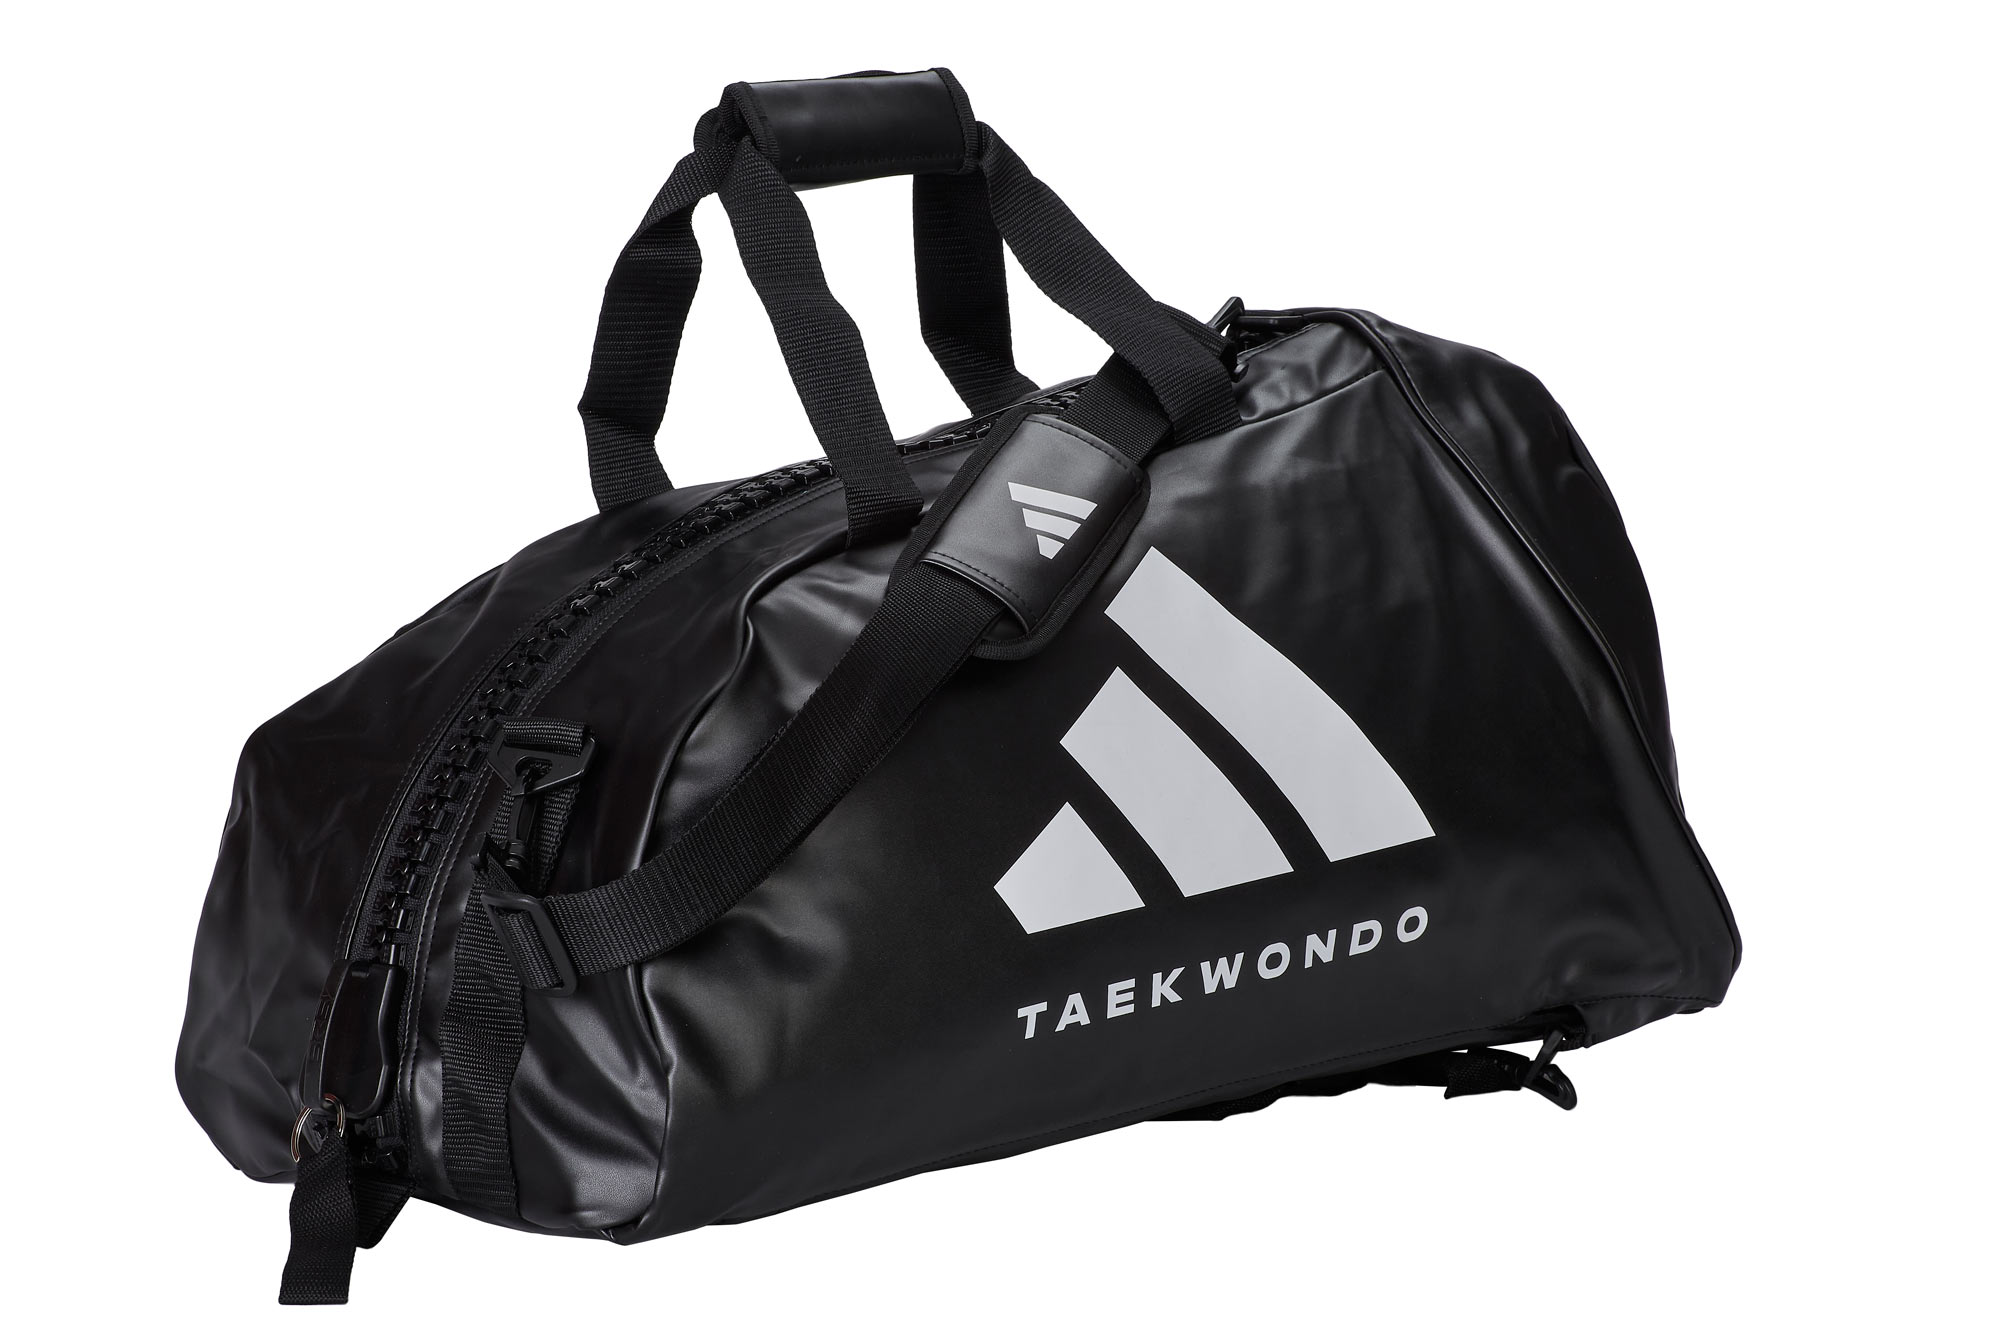 adidas 2in1 Bag Taekwondo black/white PU, adiACC051T